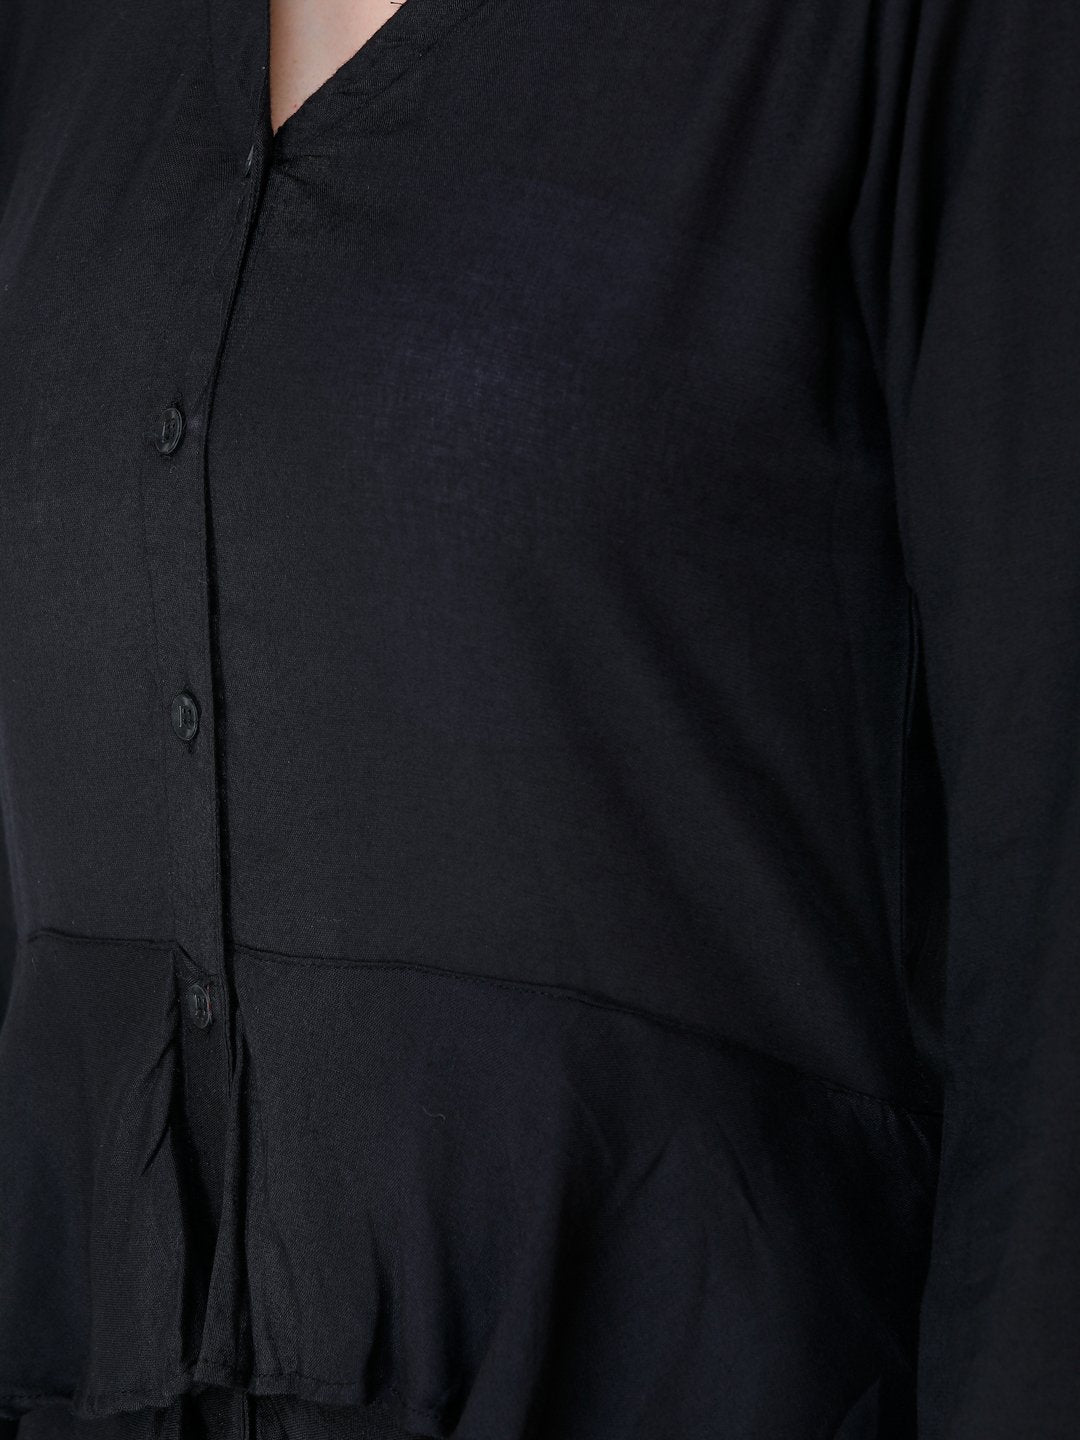 SCORPIUS BLACK CASUAL FRILL DRESS